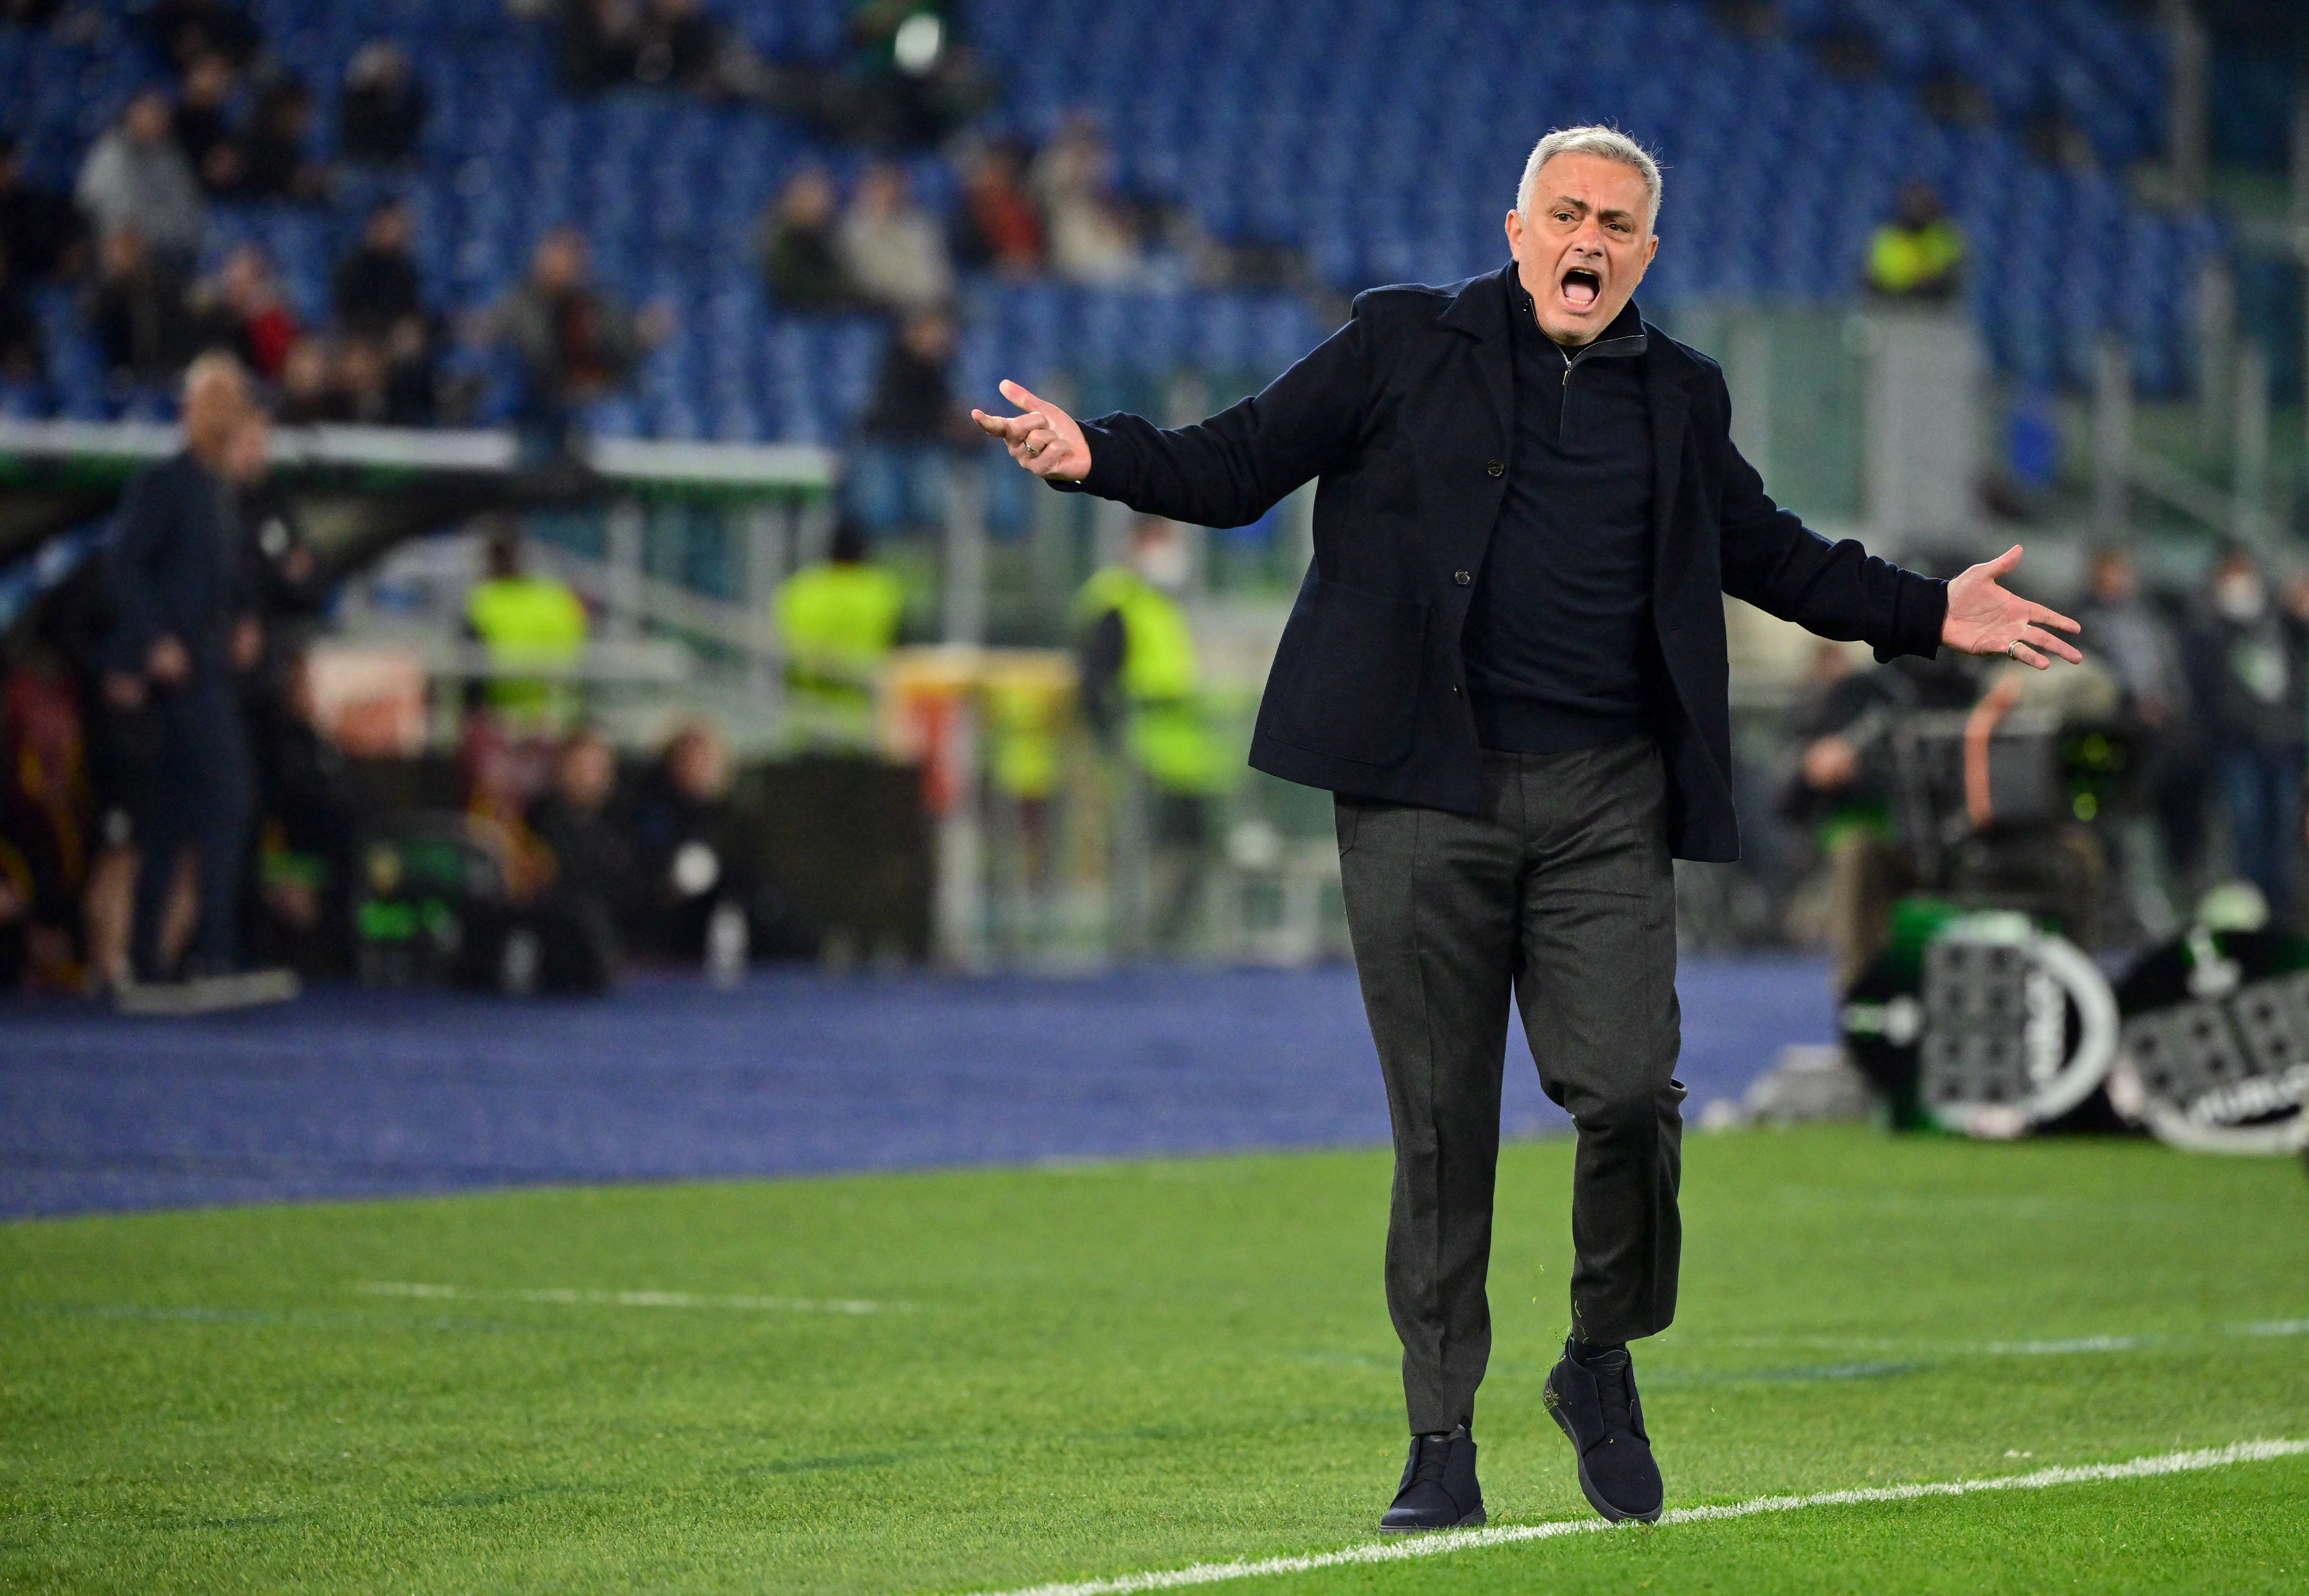 El entrenador de la Roma volvió a enfrentarse con un periodista luego de una victoria en la Serie A (Foto: Reuters)